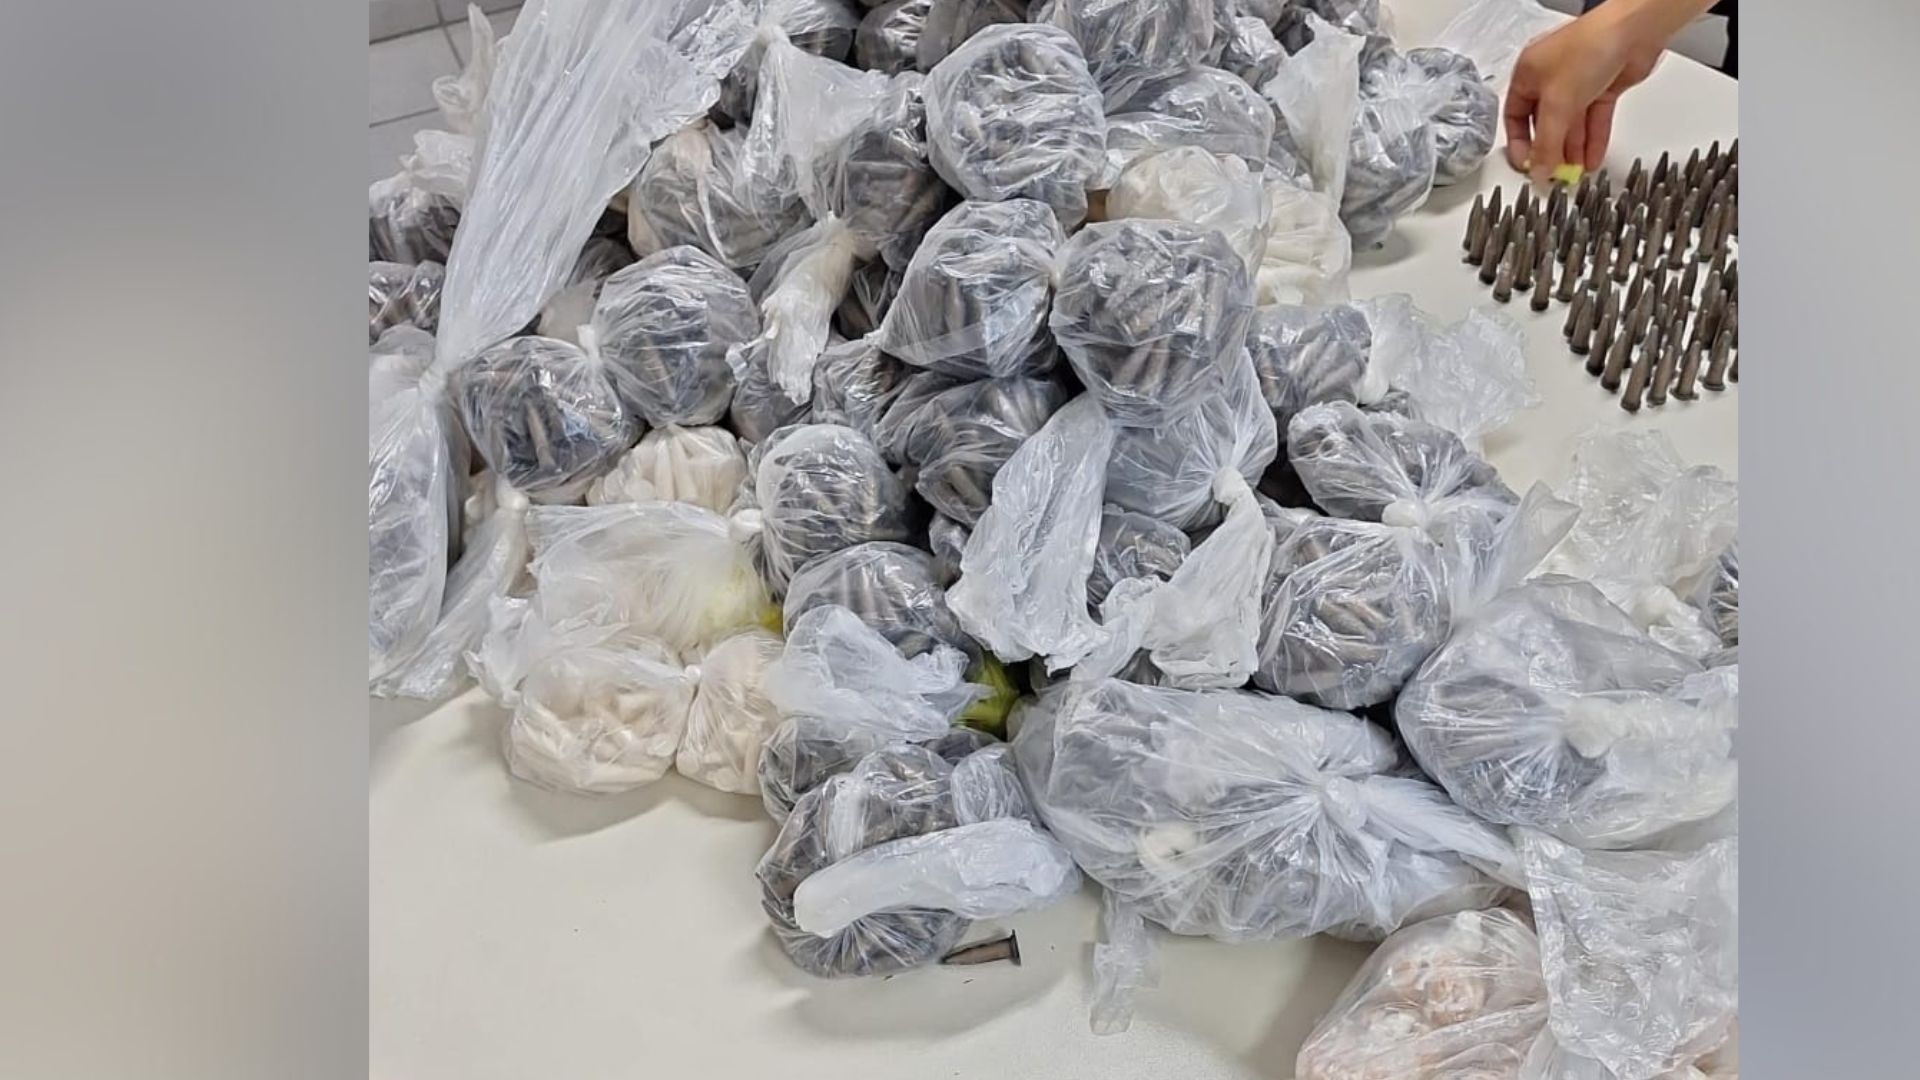 Além dos 10 mil pinos de cocaína, a Polícia Civil encontrou 849 pedras de crack; todas estavam escondidas atrás de uma árvore no bairro Flexal II, em Cariacica